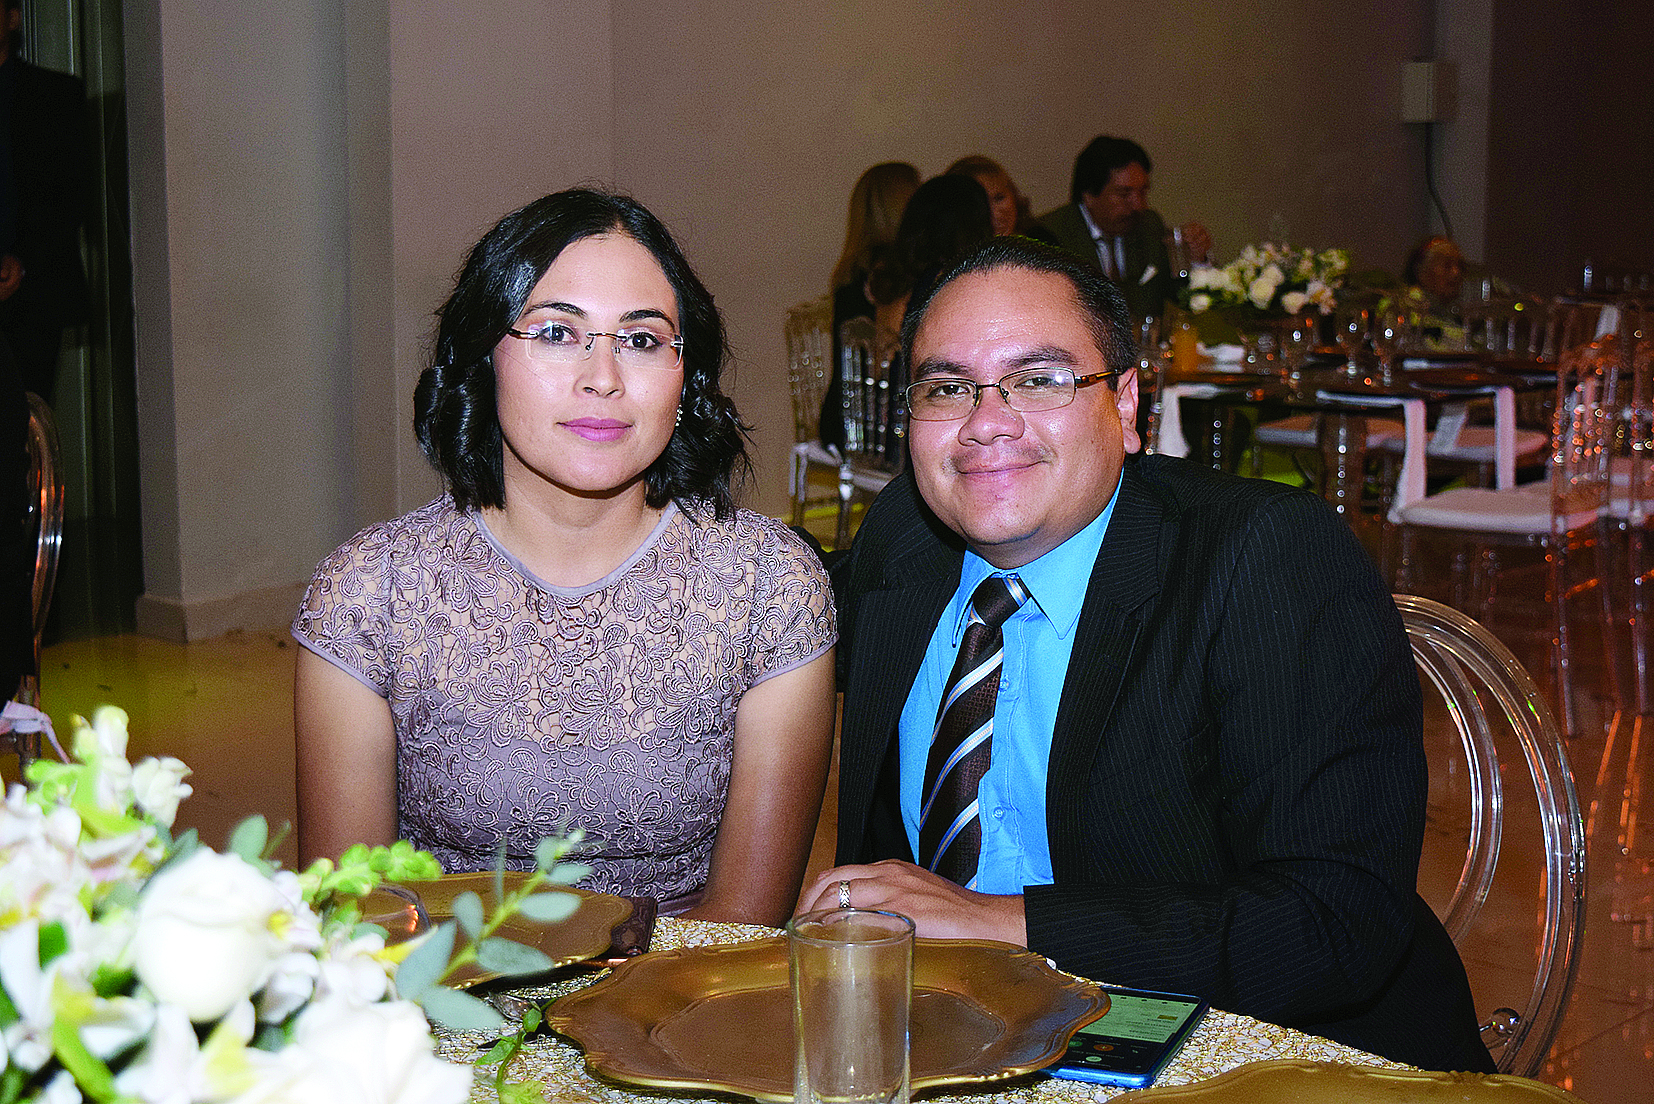 Ignacio & Tania enlazan sus vidas en matrimonio